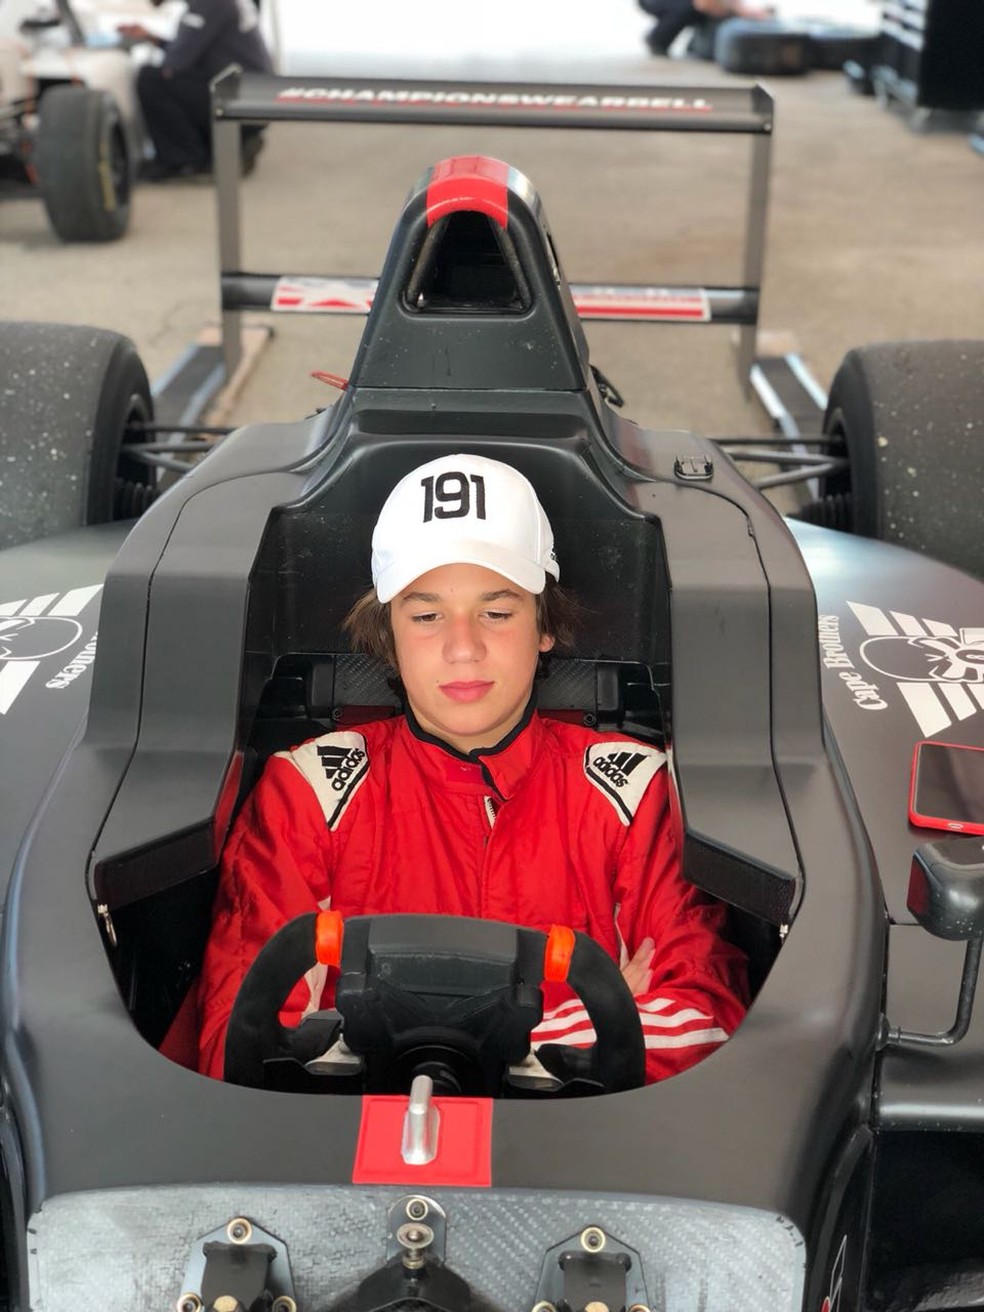 Aos 16 anos, filho de Rubinho farÃ¡ sua temporada de estreia no automobilismo (Foto: DivulgaÃ§Ã£o)